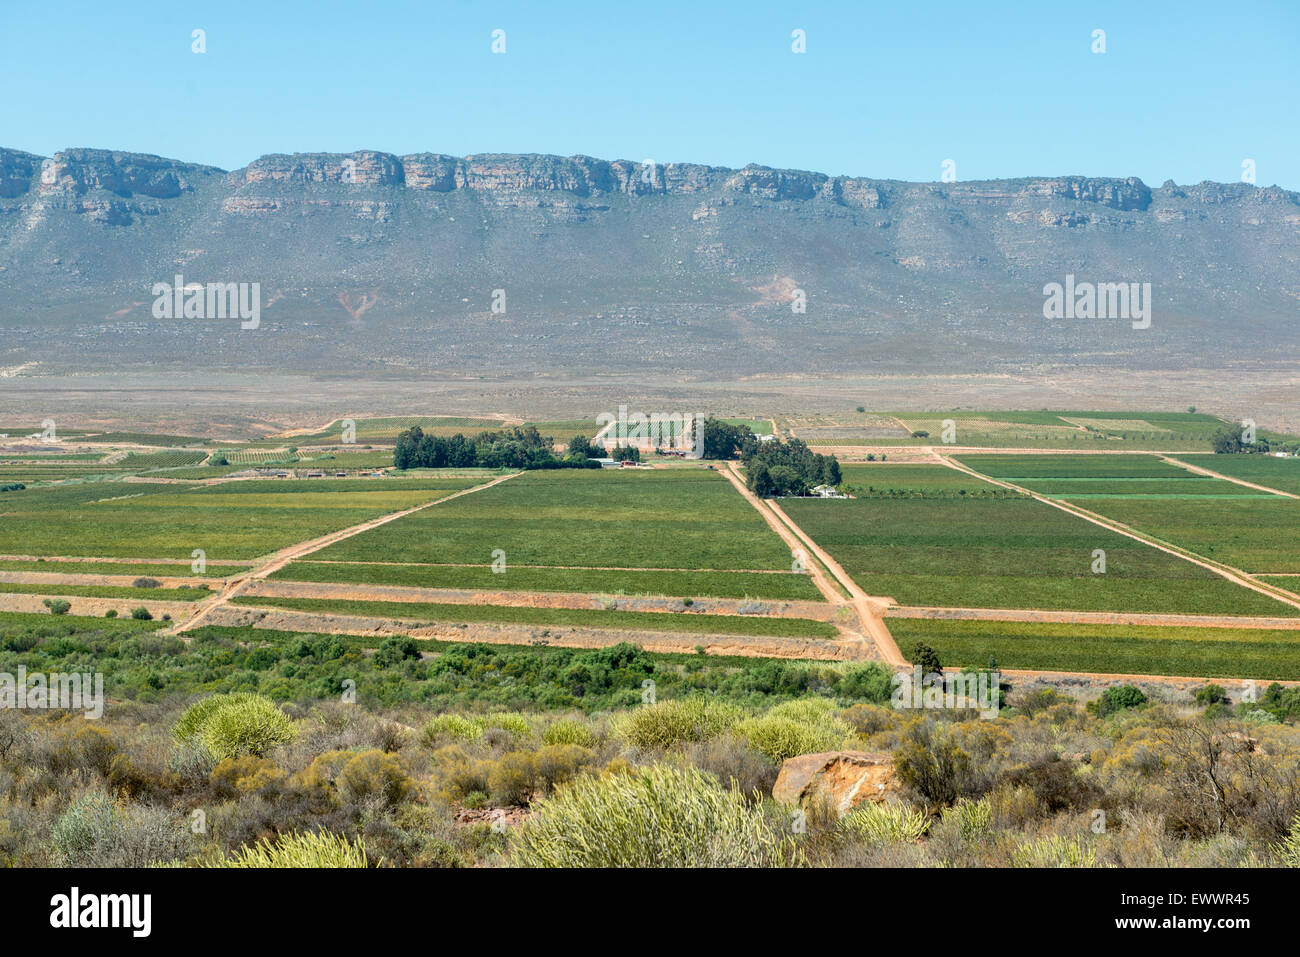 Afrique du Sud - vue aérienne du paysage agricole Banque D'Images